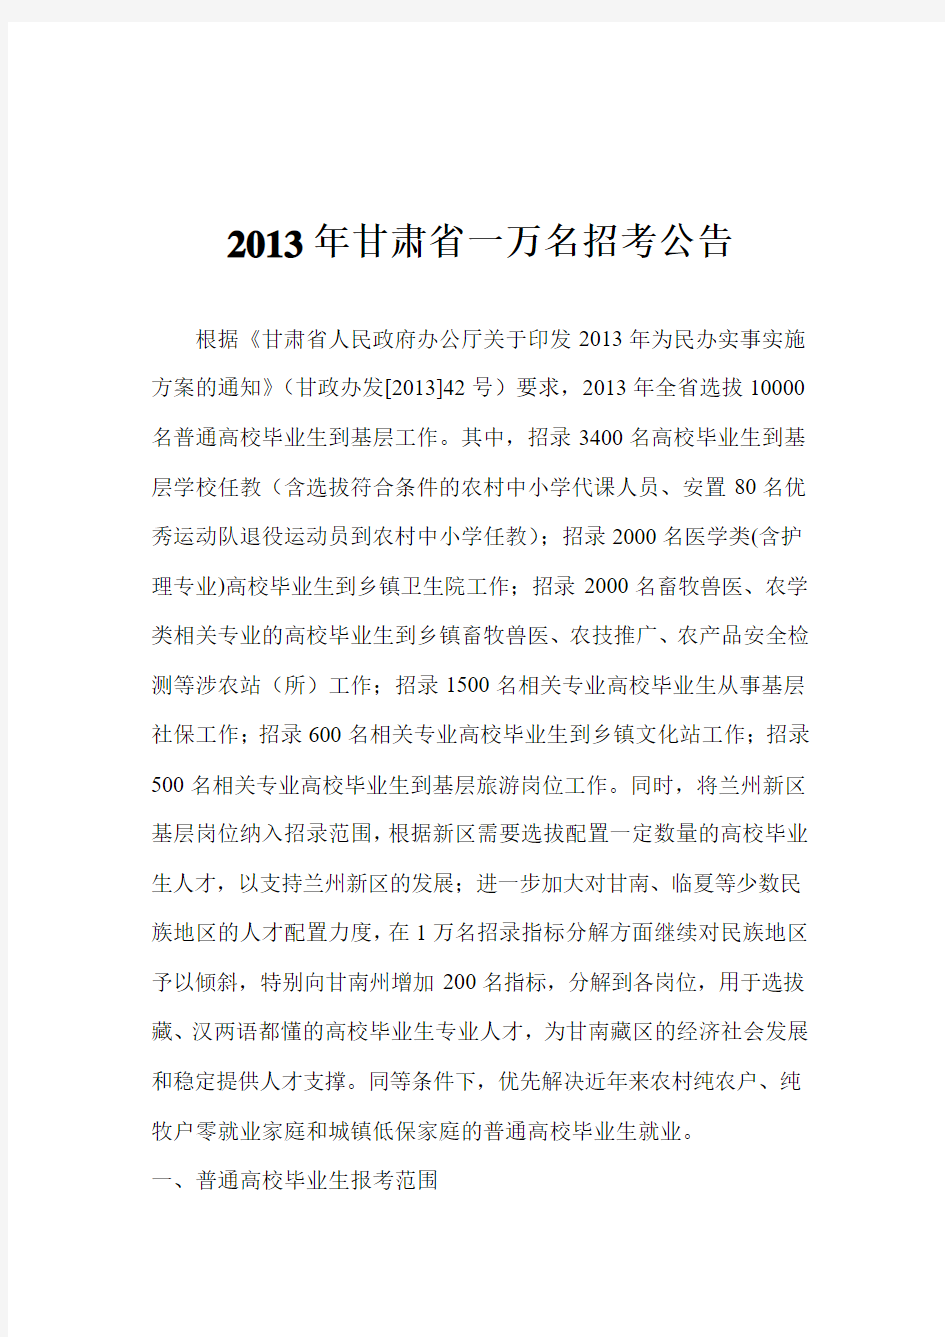 2013年甘肃省一万名招考公告